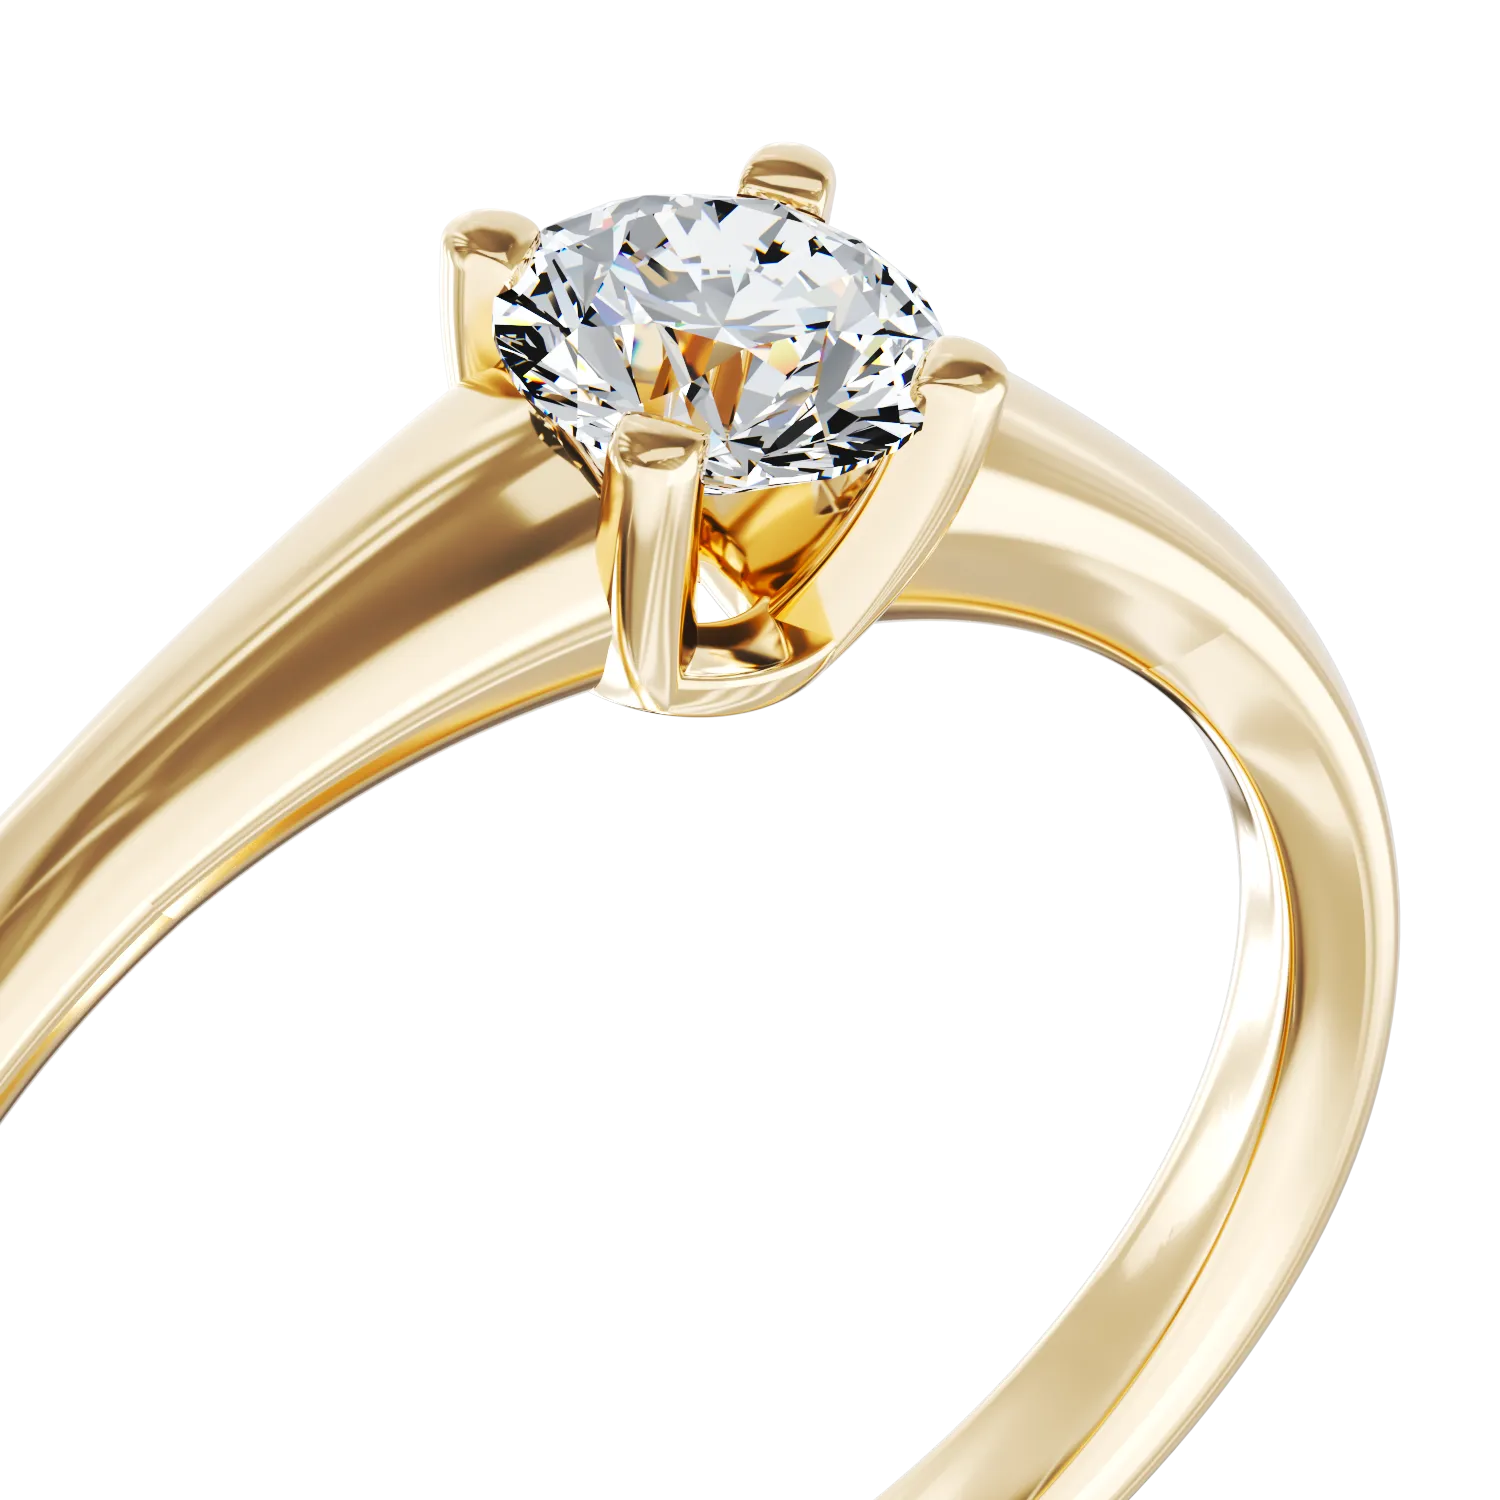 Eljegyzési gyűrű 18K-os sárga aranyból 0,3ct gyémánttal. Gramm: 2,95